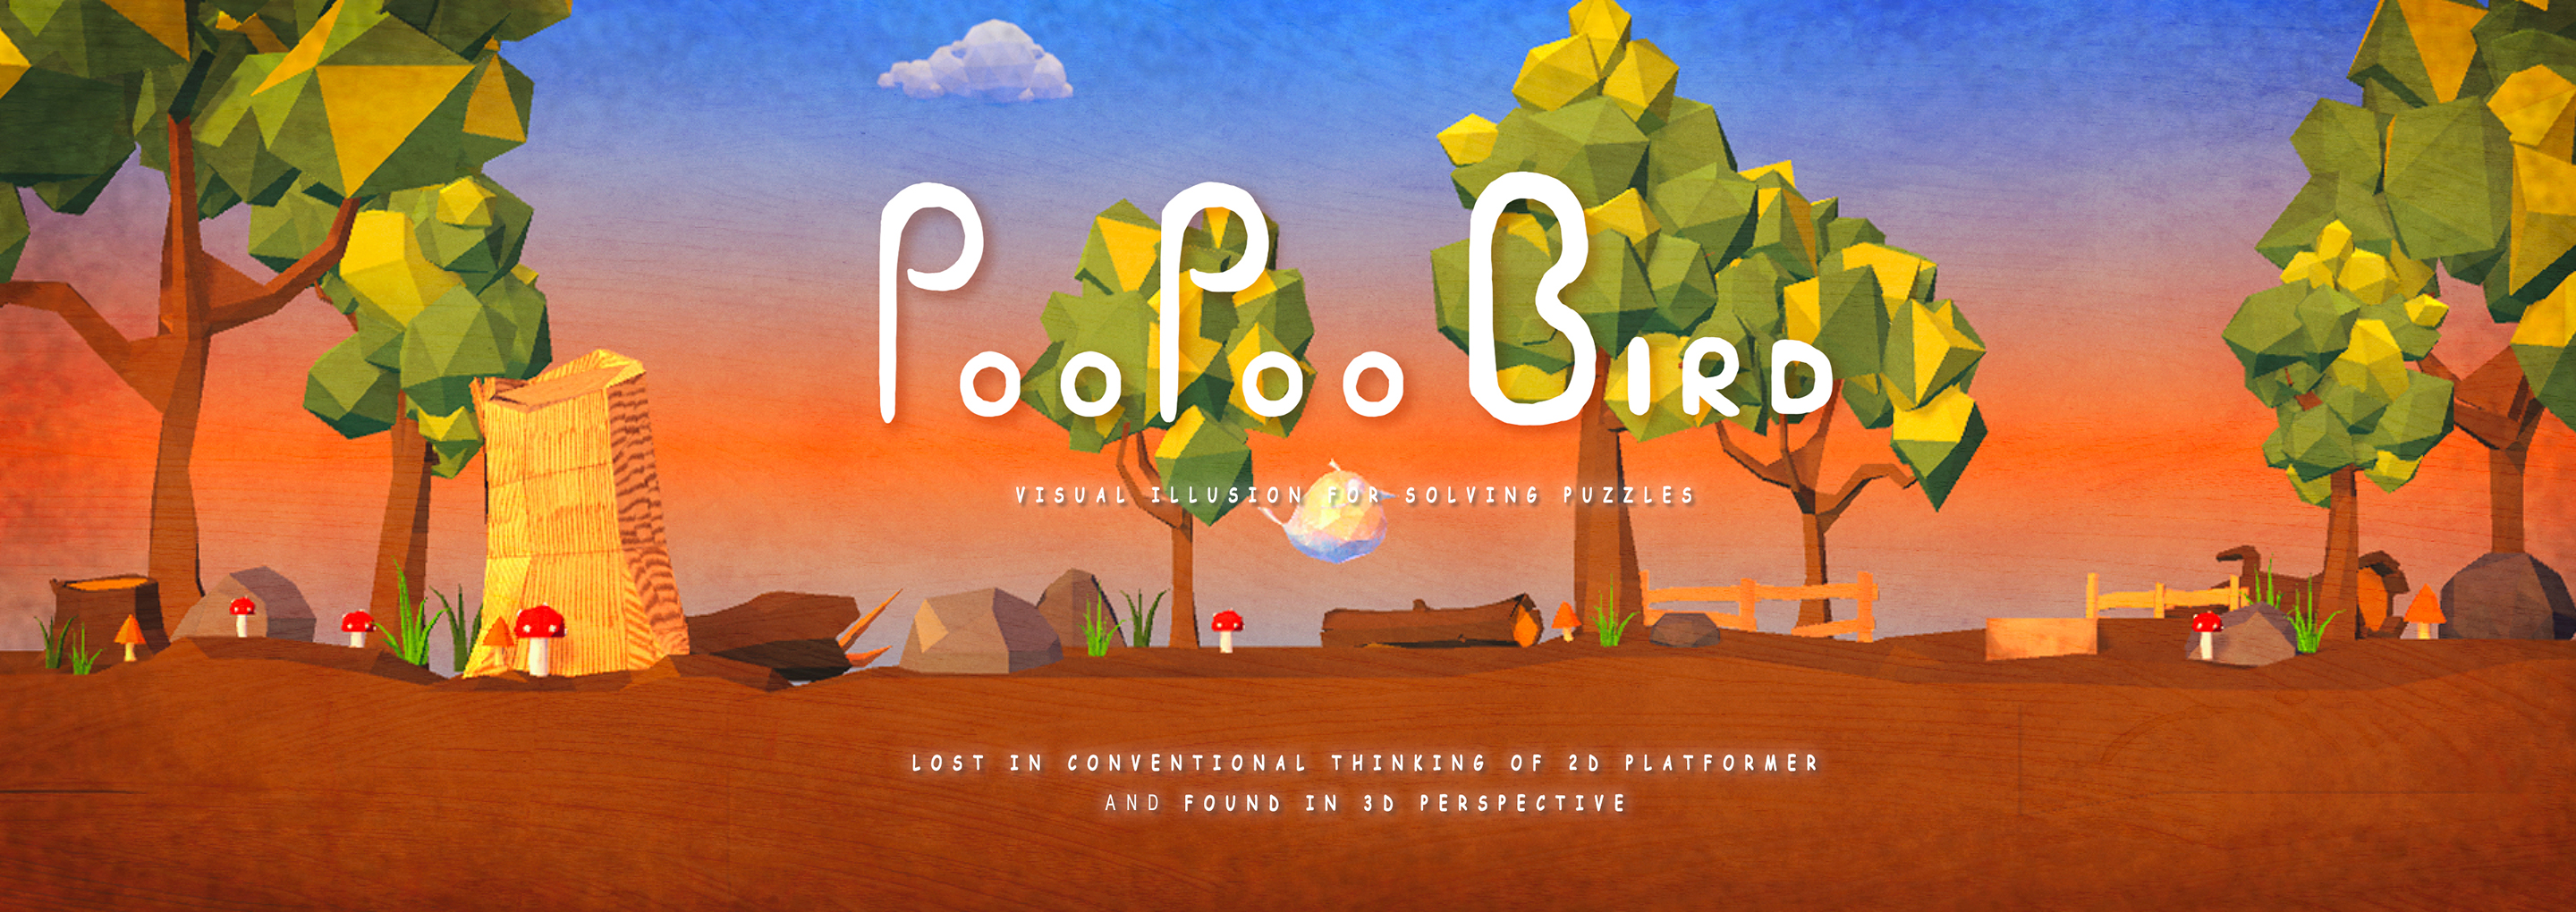 Poo Poo Bird